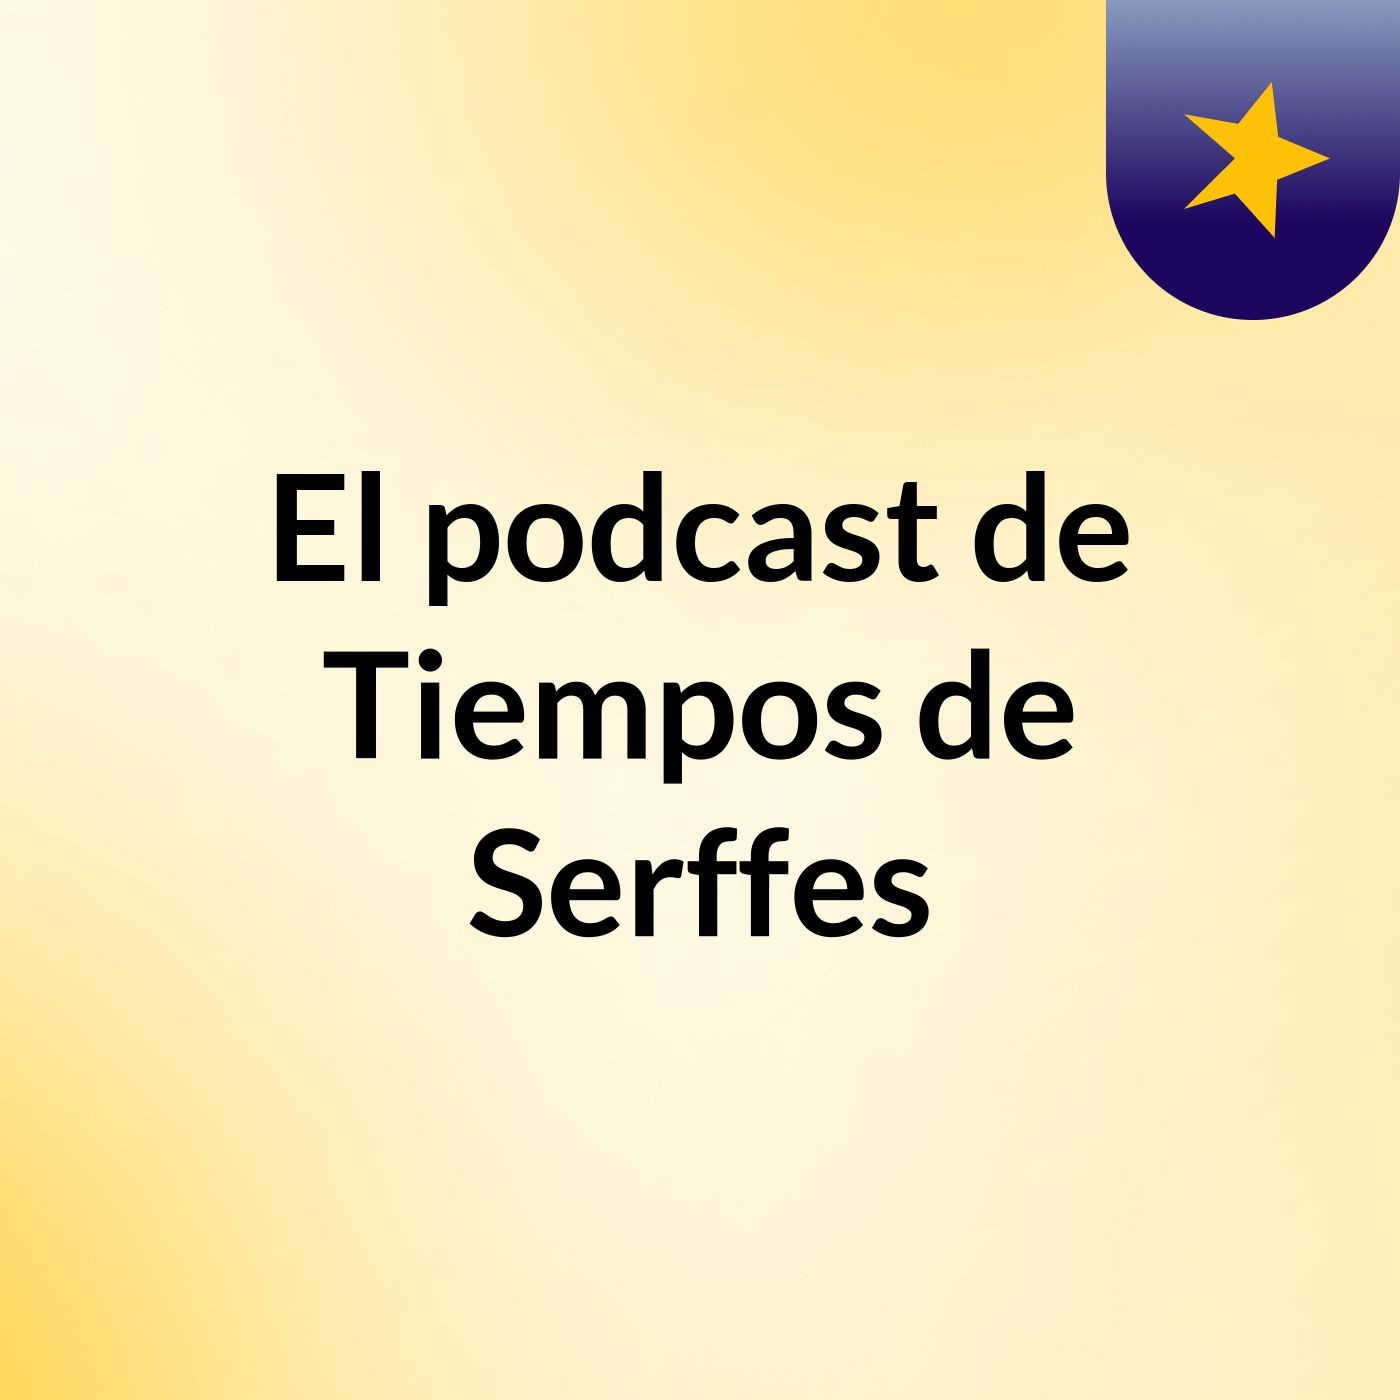 Episodio 20 - El podcast de Tiempos de Serffes